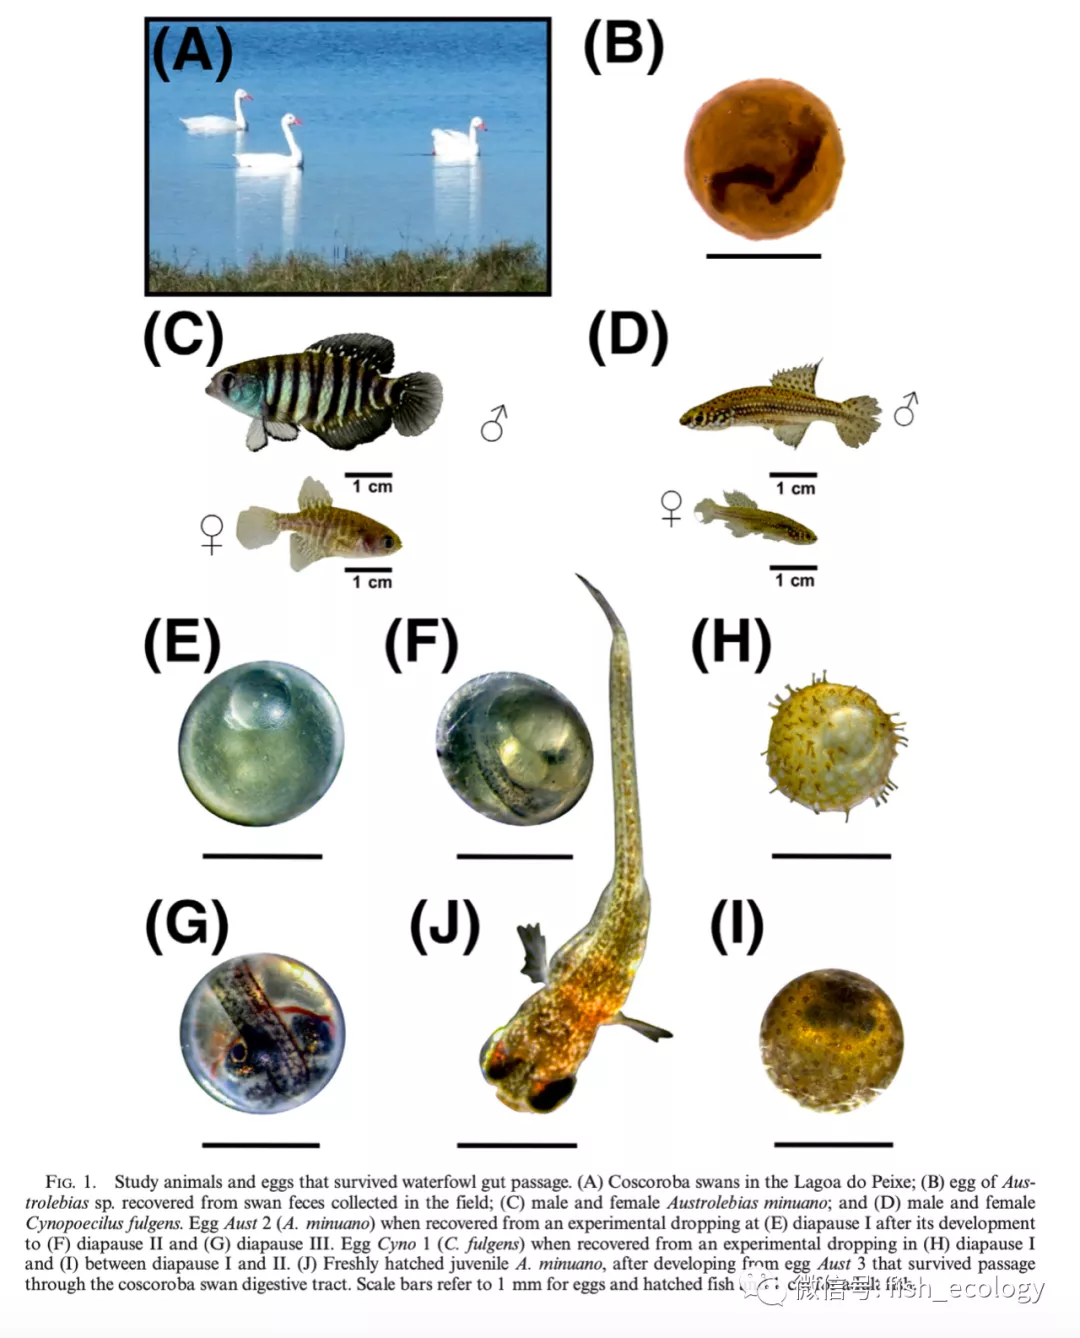 鱼通过水鸟肠道实现物种远距离传播：水禽粪便收集的鱼卵可以存活